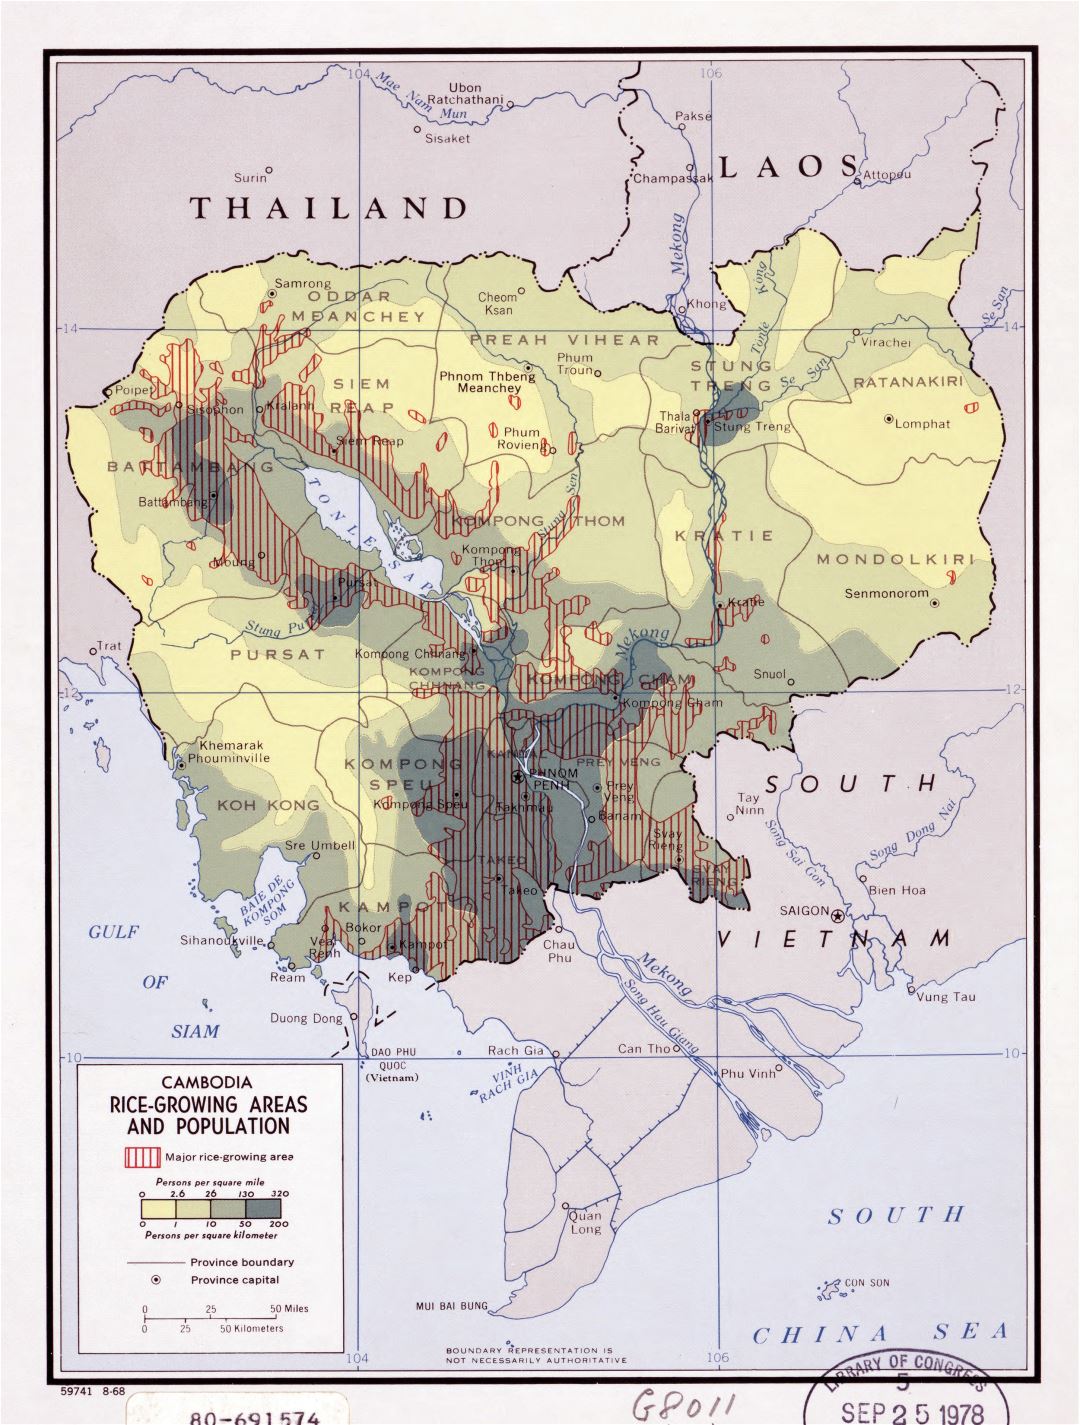 Grande detallado áreas de cultivo de arroz y de población mapa de Camboya - 1968